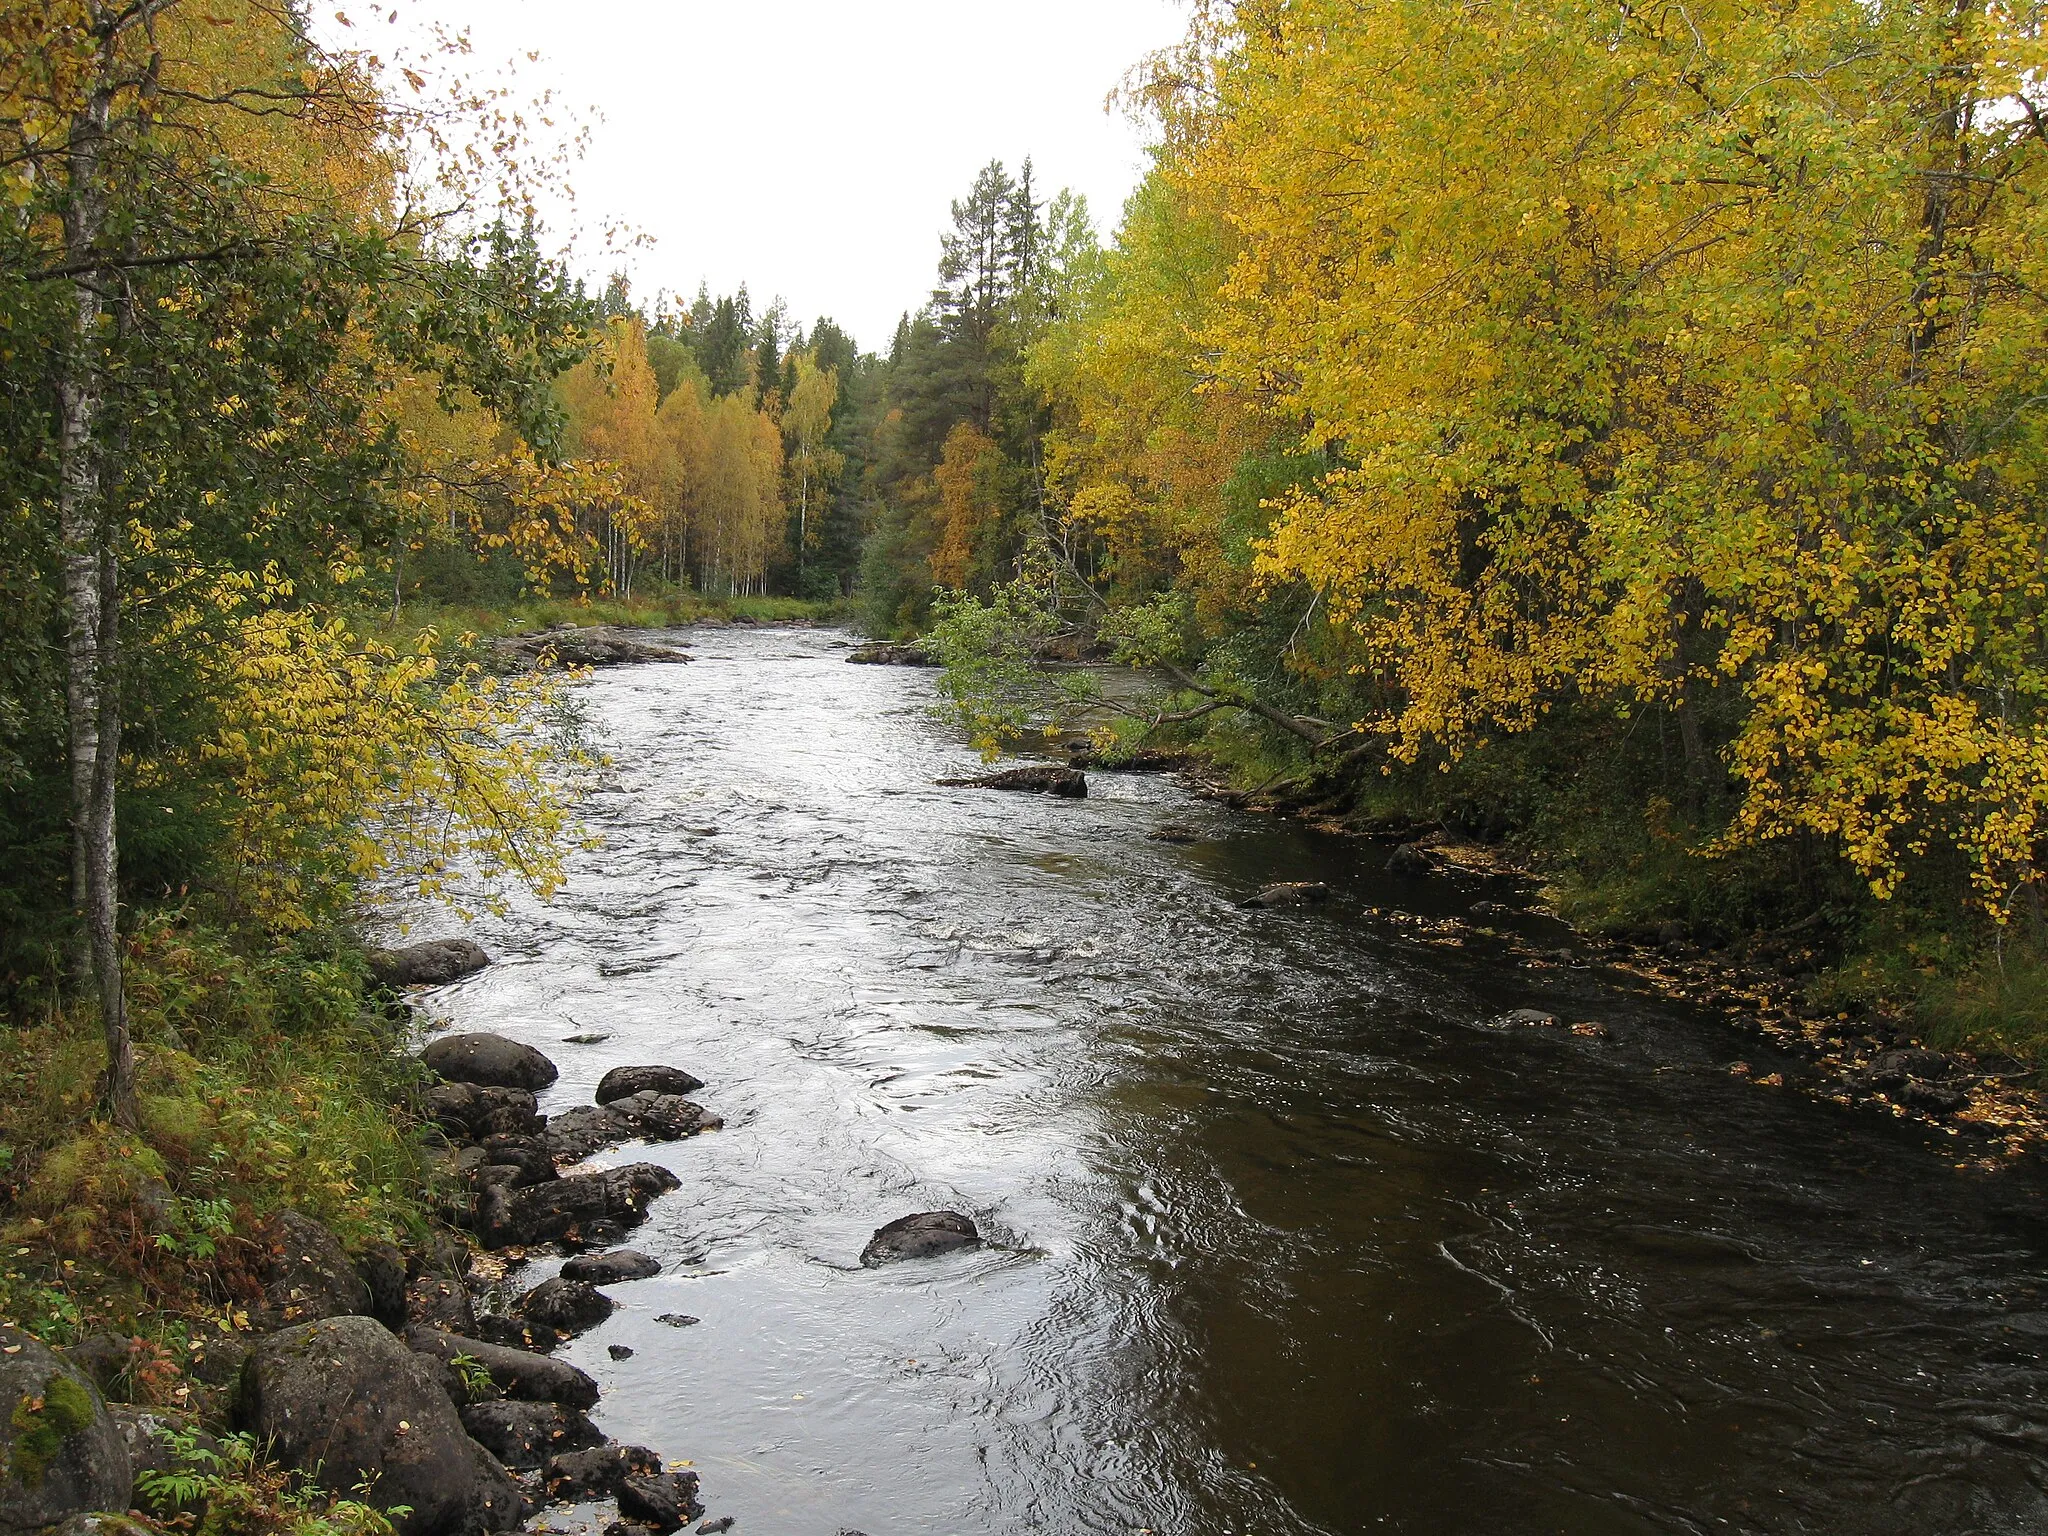 Photo showing: The Kalliuskoski rapids of the Kiiminkijoki river in Puolanka, Finland.